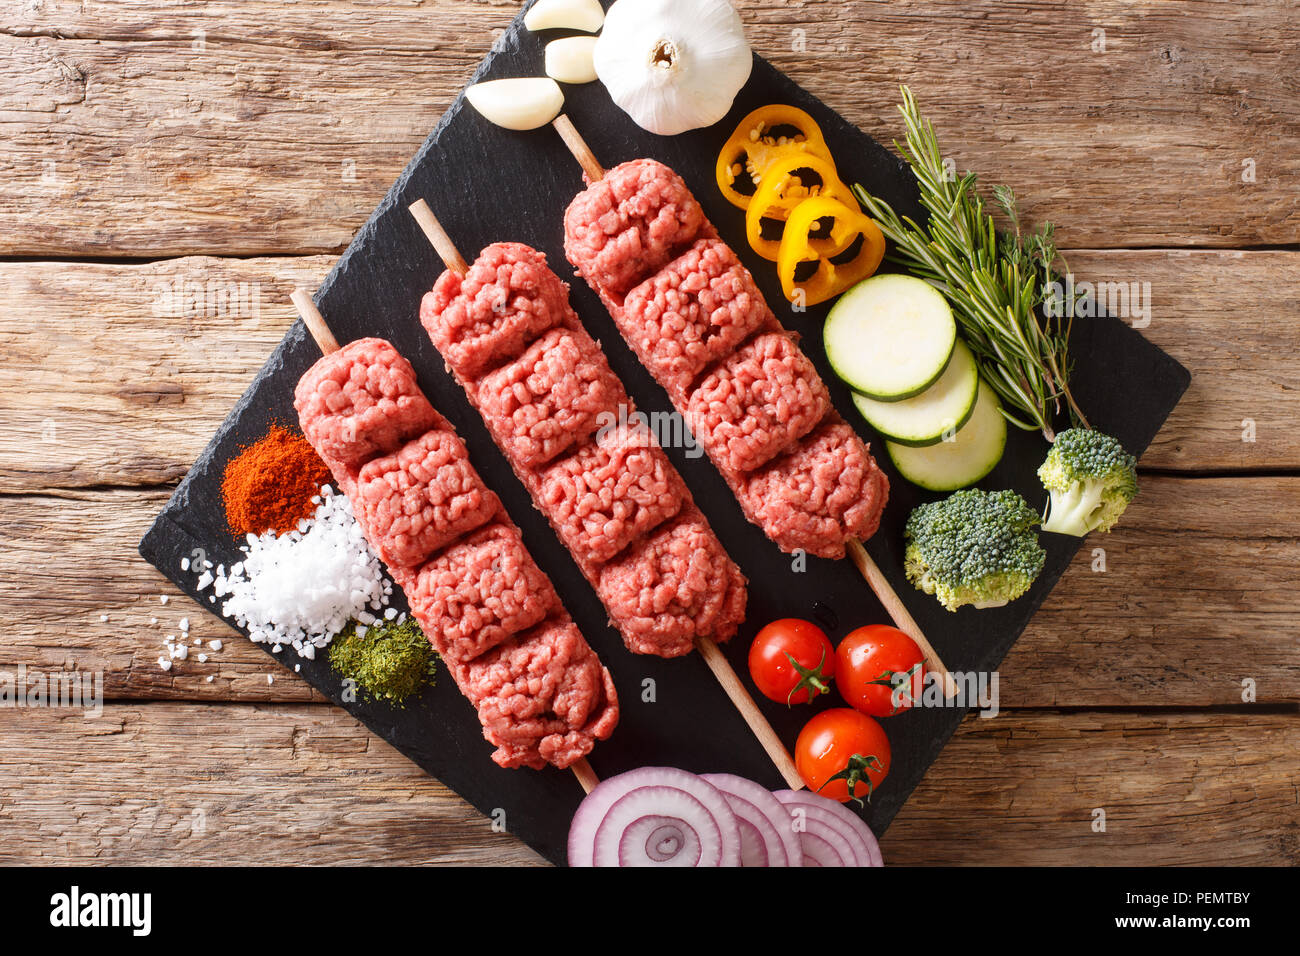 Kebab de boeuf haché cru avec des ingrédients et des légumes sur la table.  Haut horizontale Vue de dessus Photo Stock - Alamy